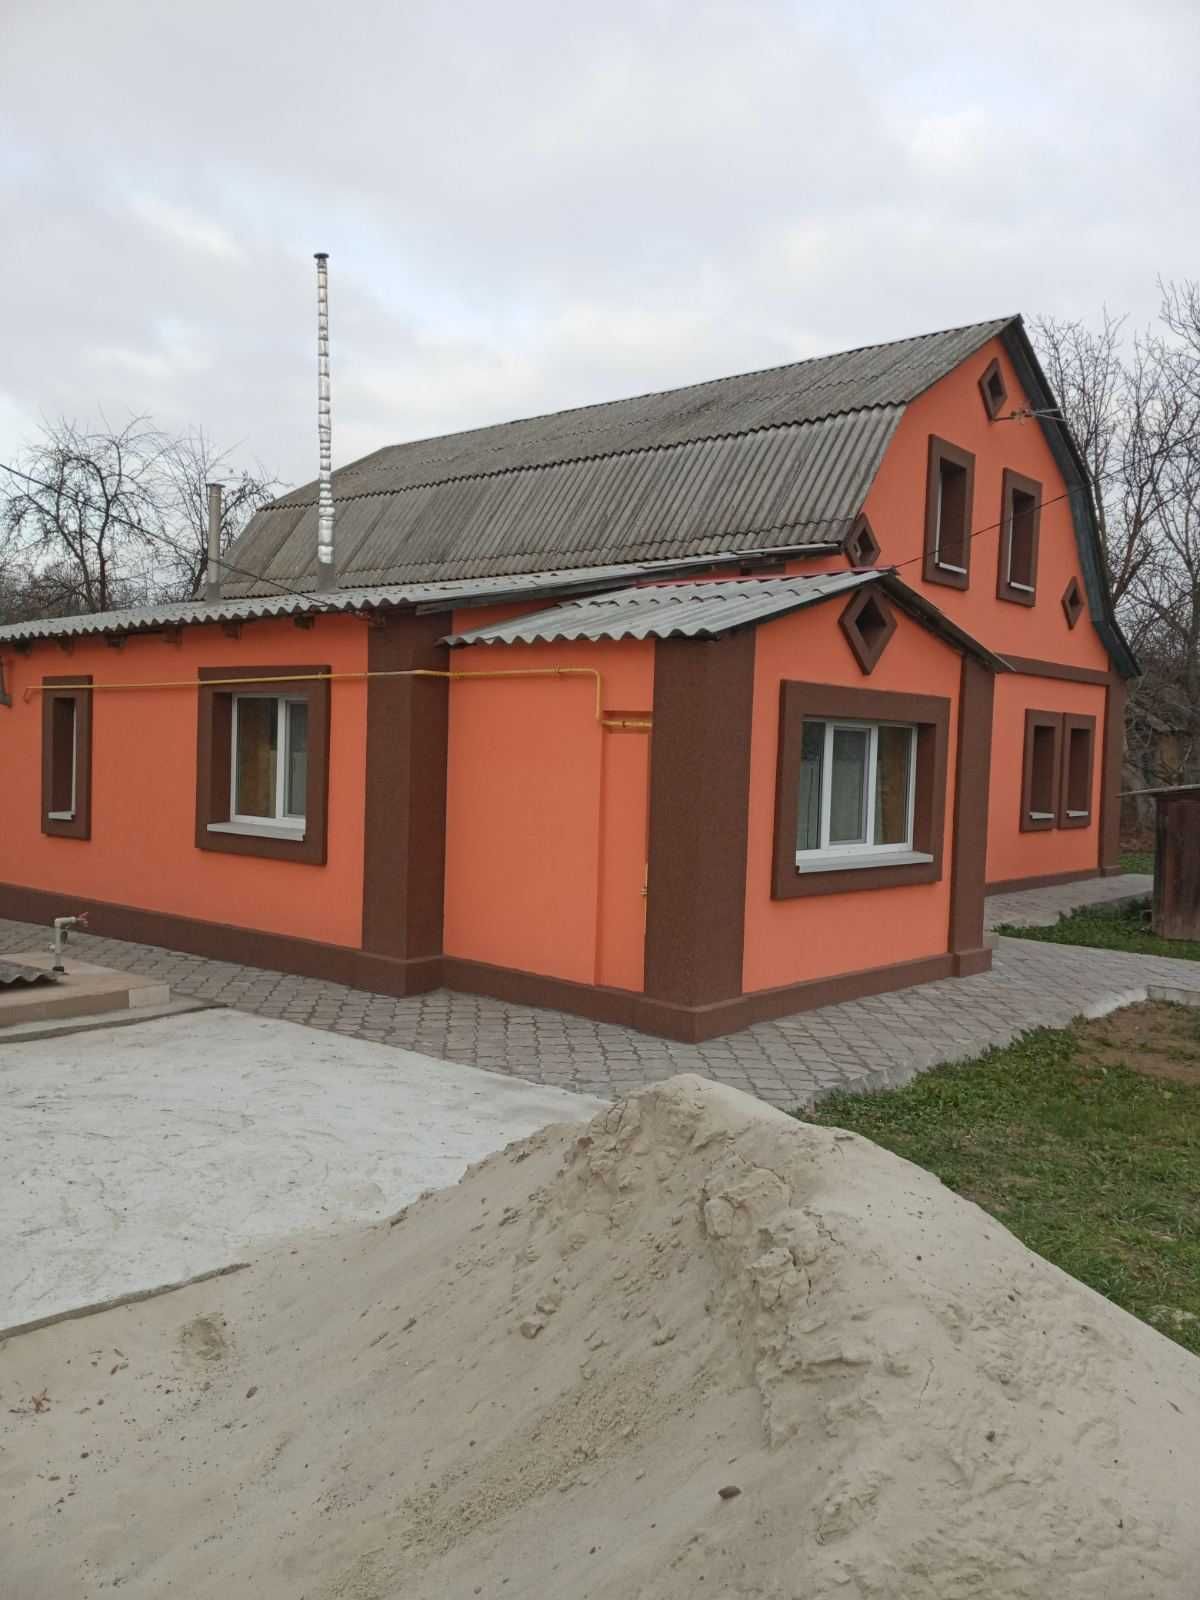 Продається будинок Київська область